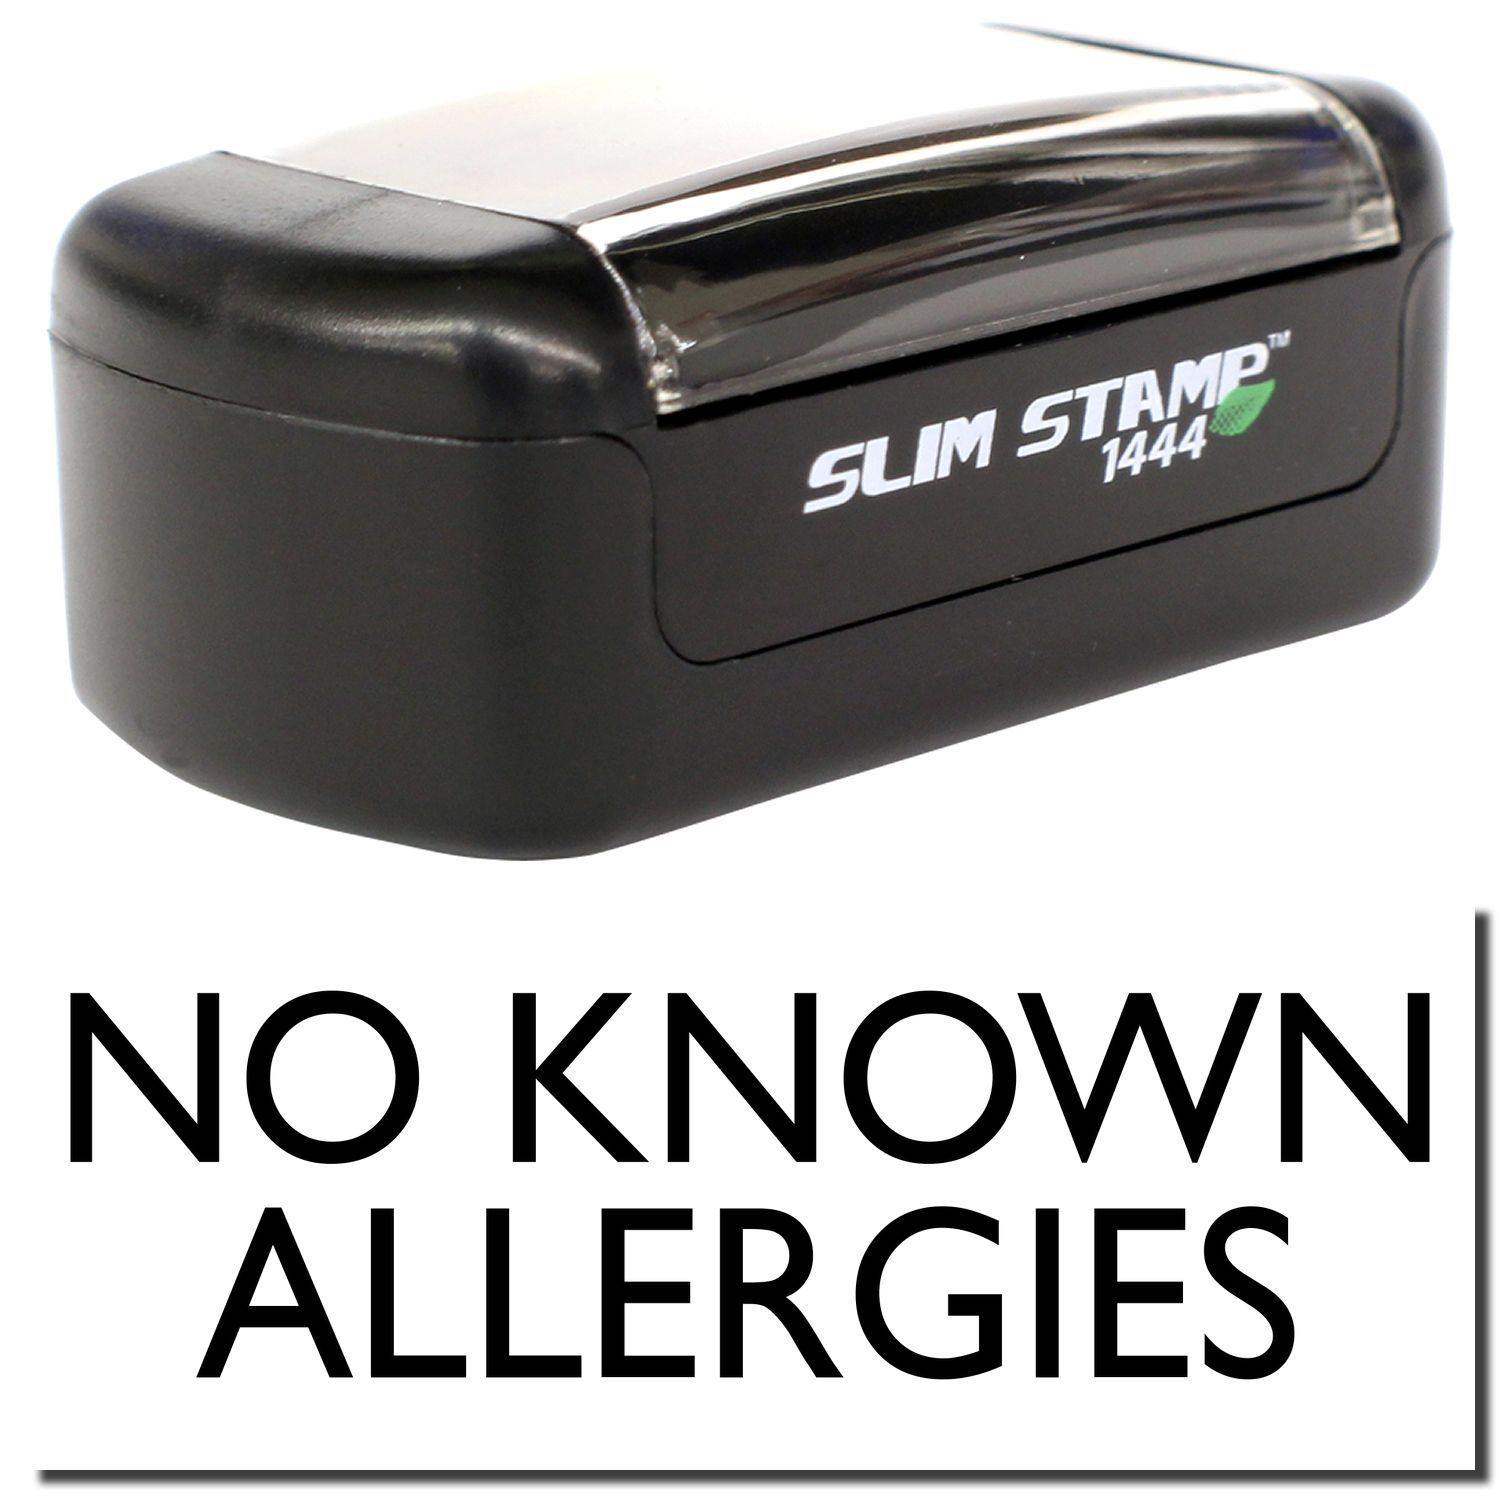 Slim Pre Inked No Known Allergies Stamp Main Image